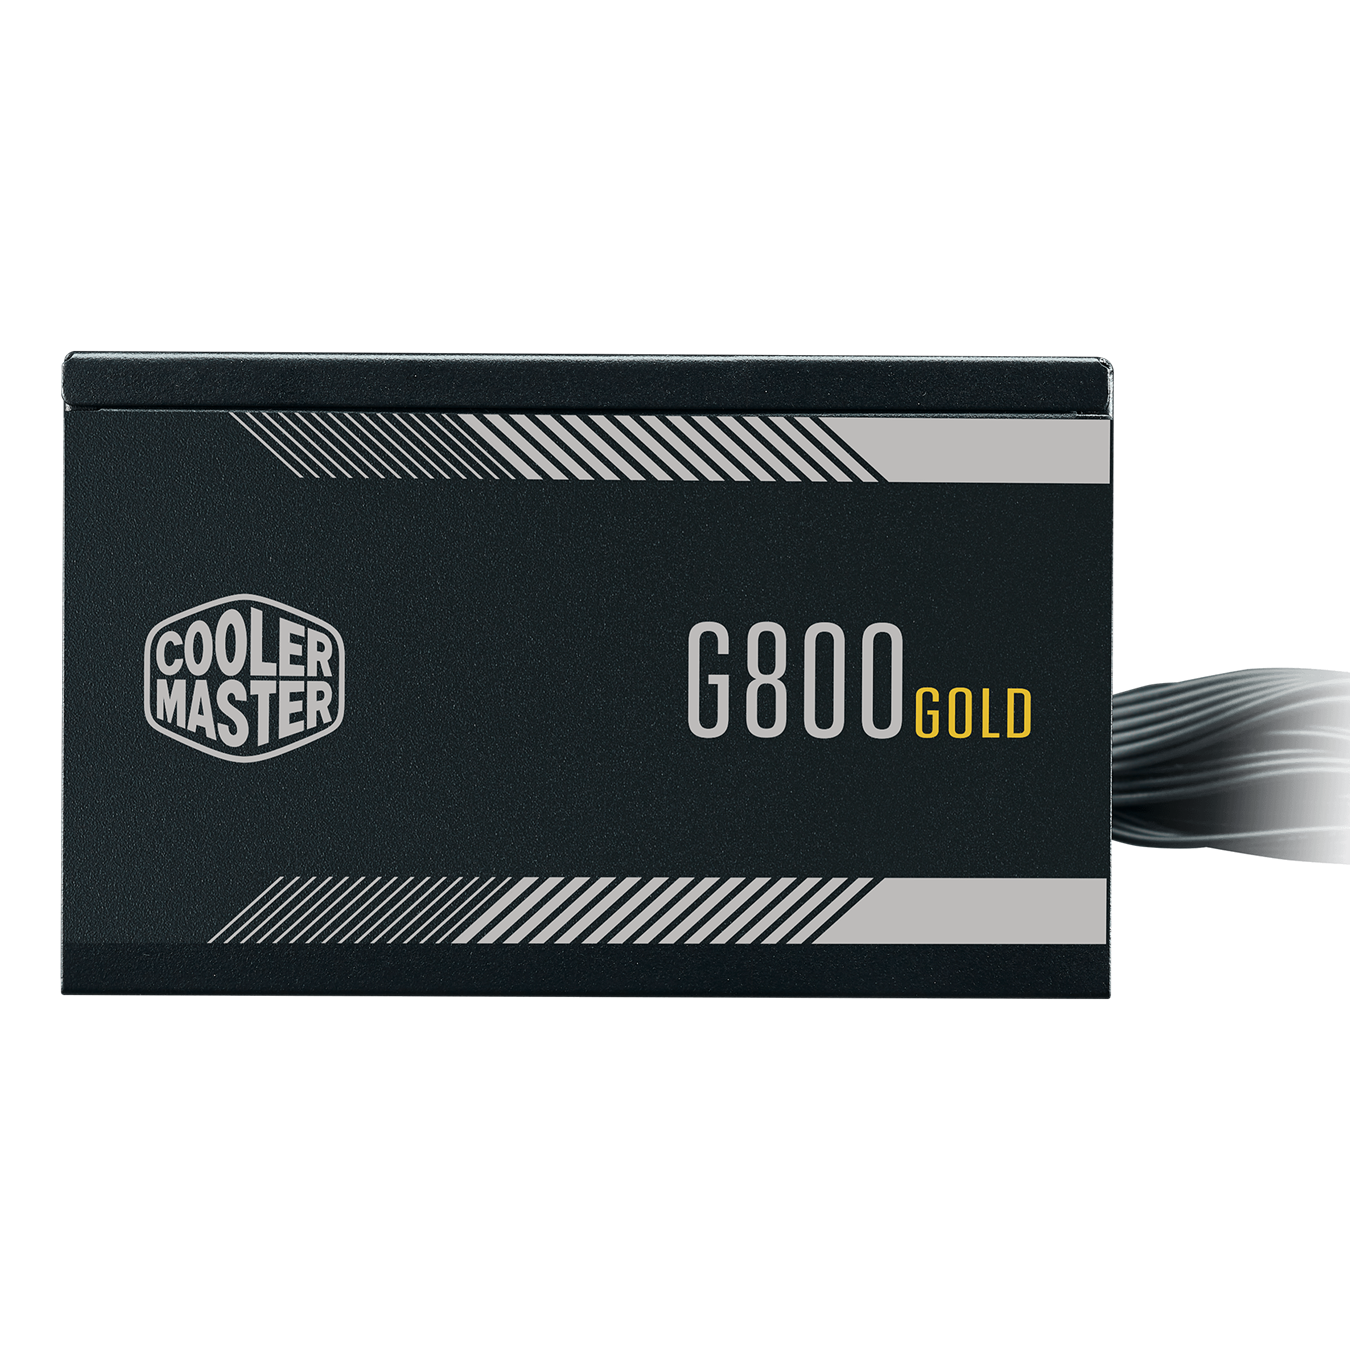 G800 Gold - 2 EPS Connectors